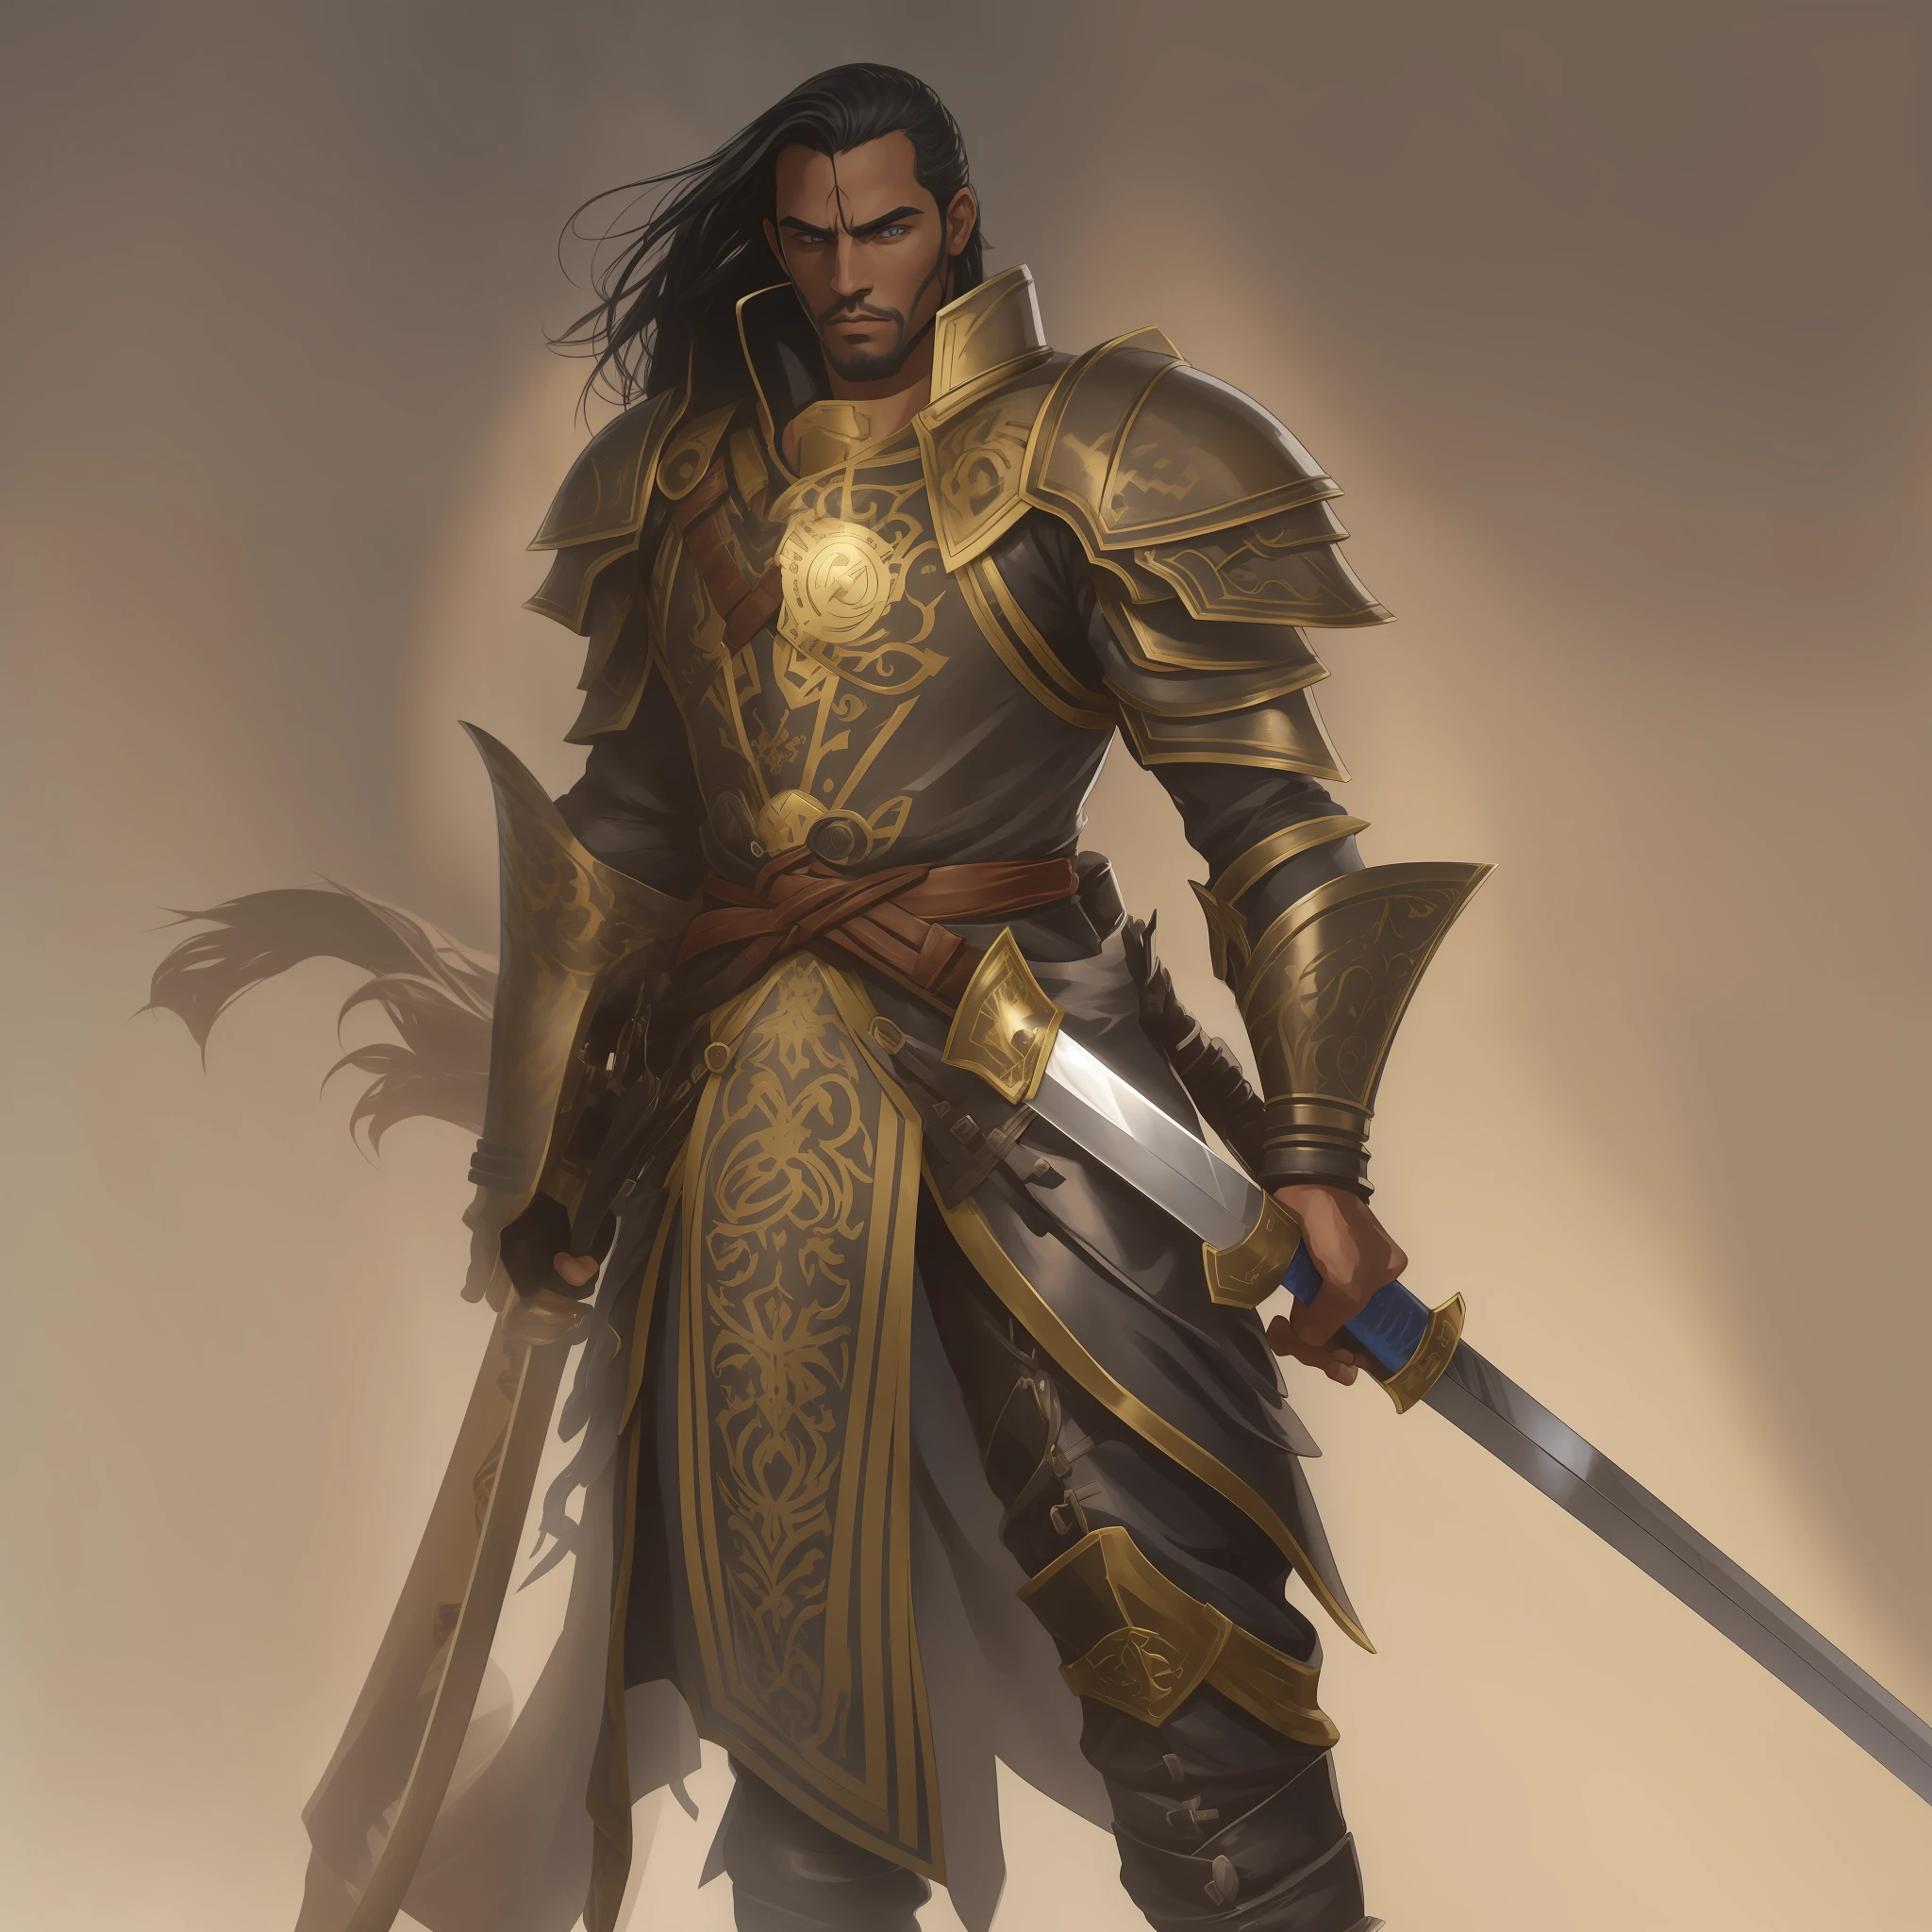 キャラクター, キラリと光る鎧を着た男, 両手に長い剣を持っている , 人間の男性パラディン, 扶桑レイパラディン画像, 男性パラディーノ, 黄金の聖騎士